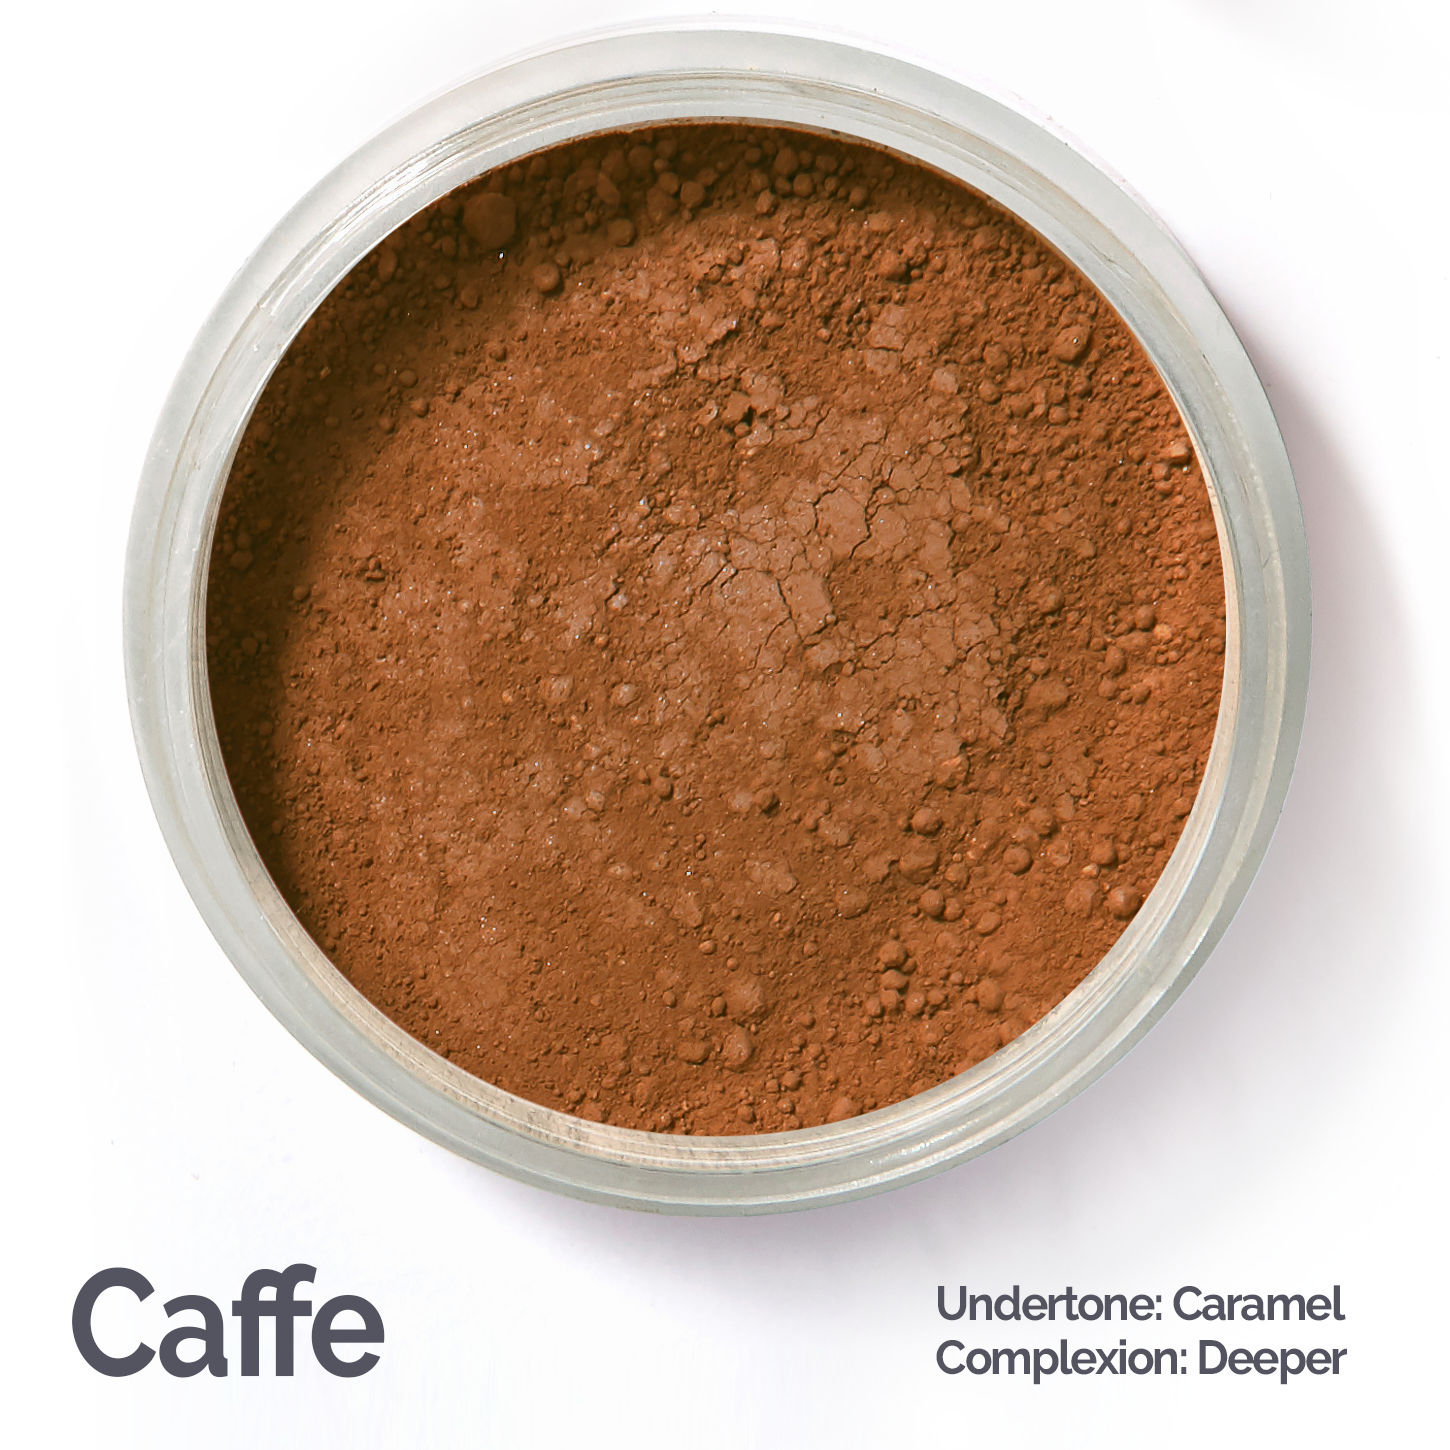 Darkest foundation color #caffe 